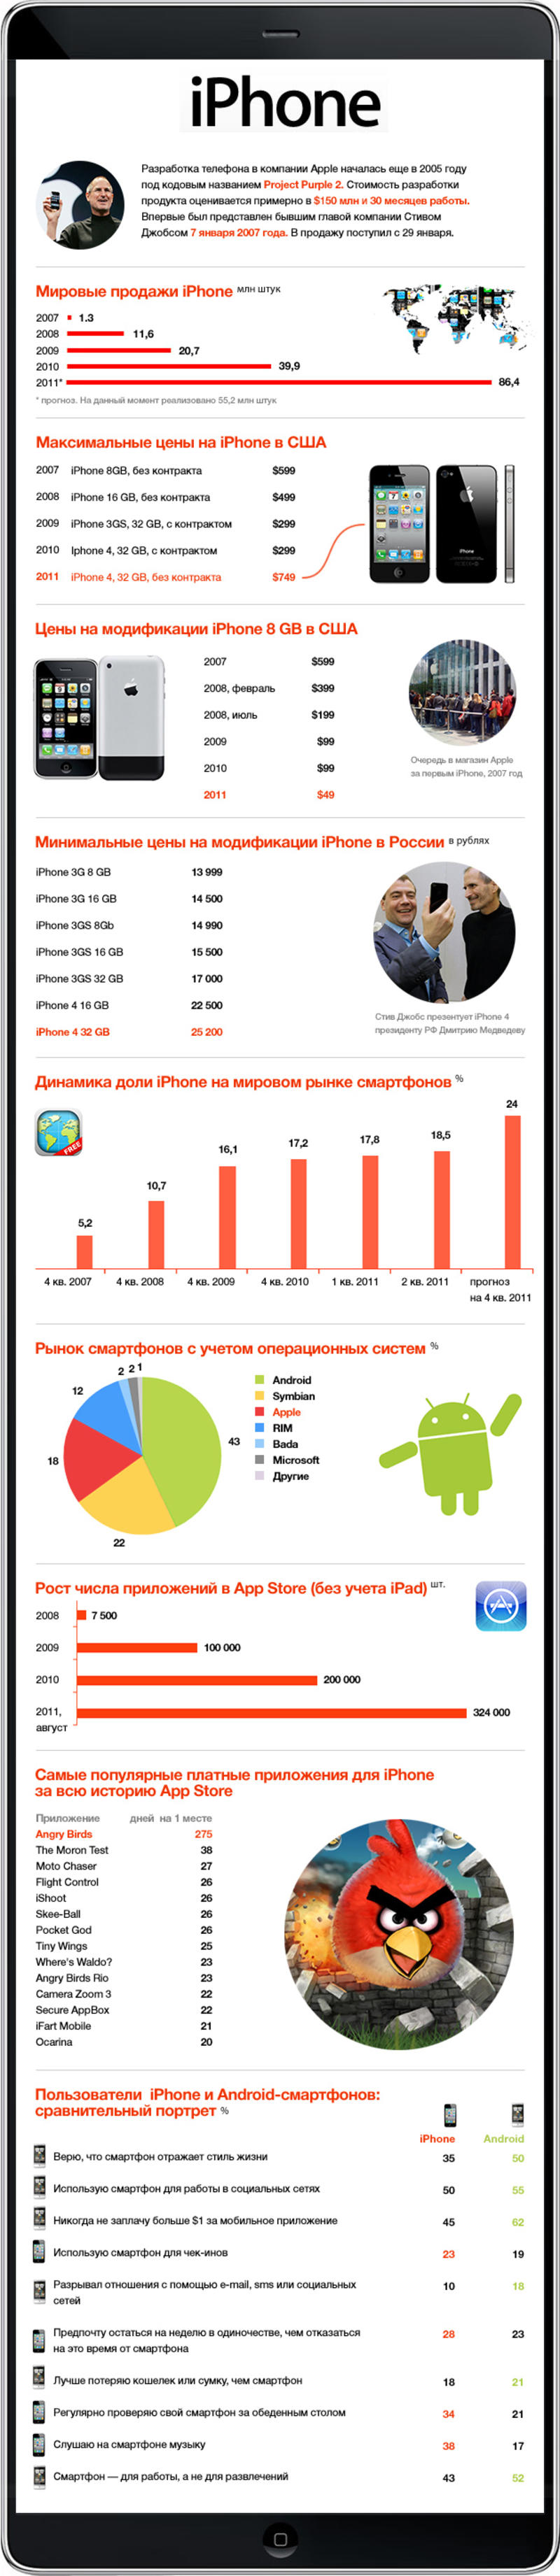 iPhone в цифрах и картинках / slon.ru